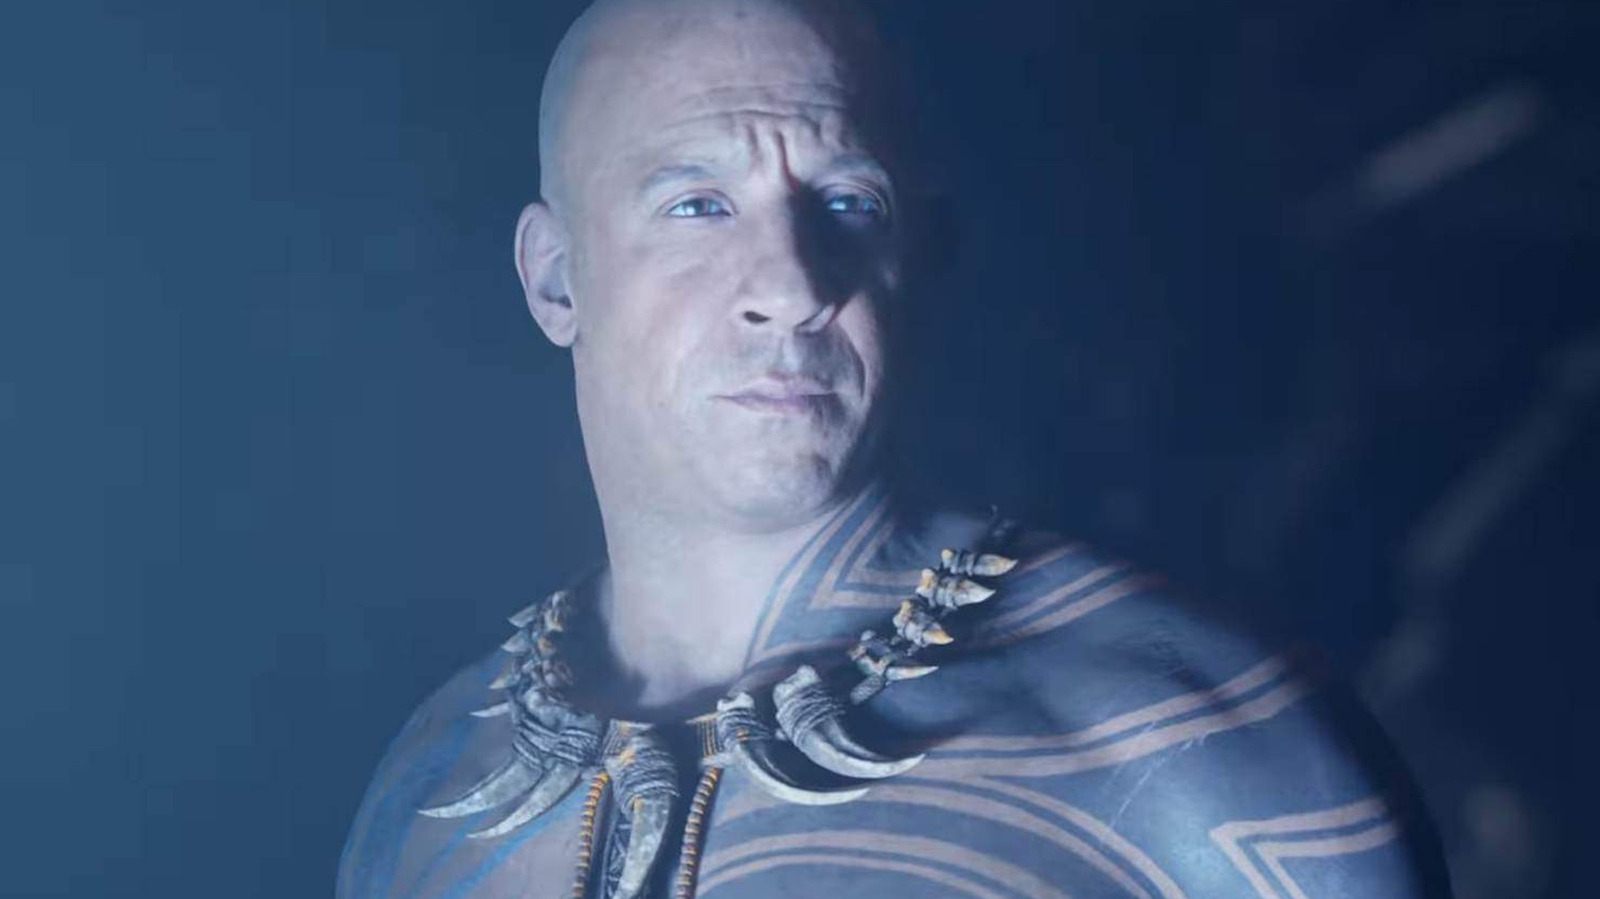 Vin Diesel stars in debut trailer for 'Ark II